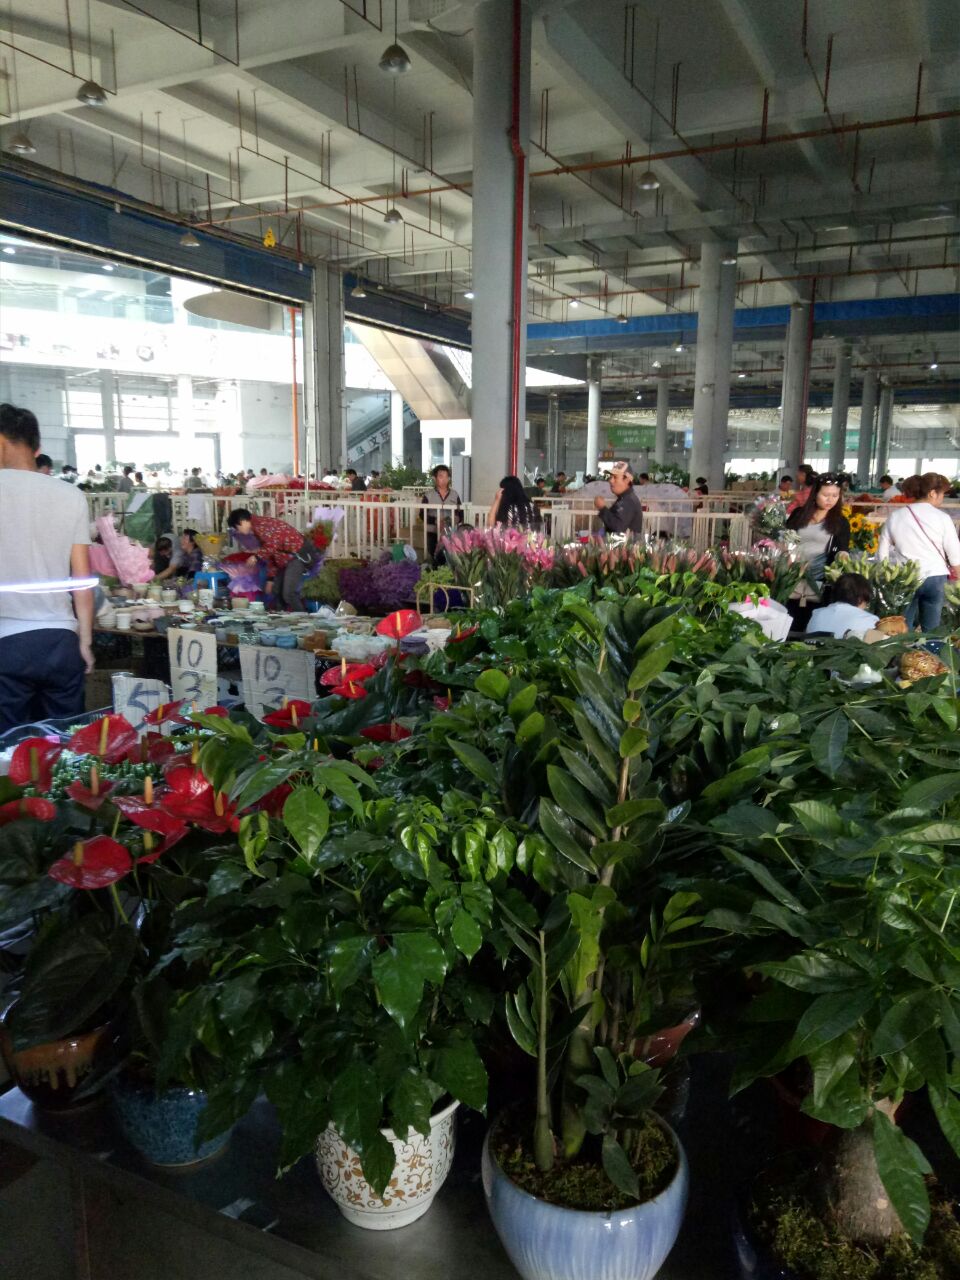 【携程攻略】昆明斗南花卉市场购物,花实在太美了!